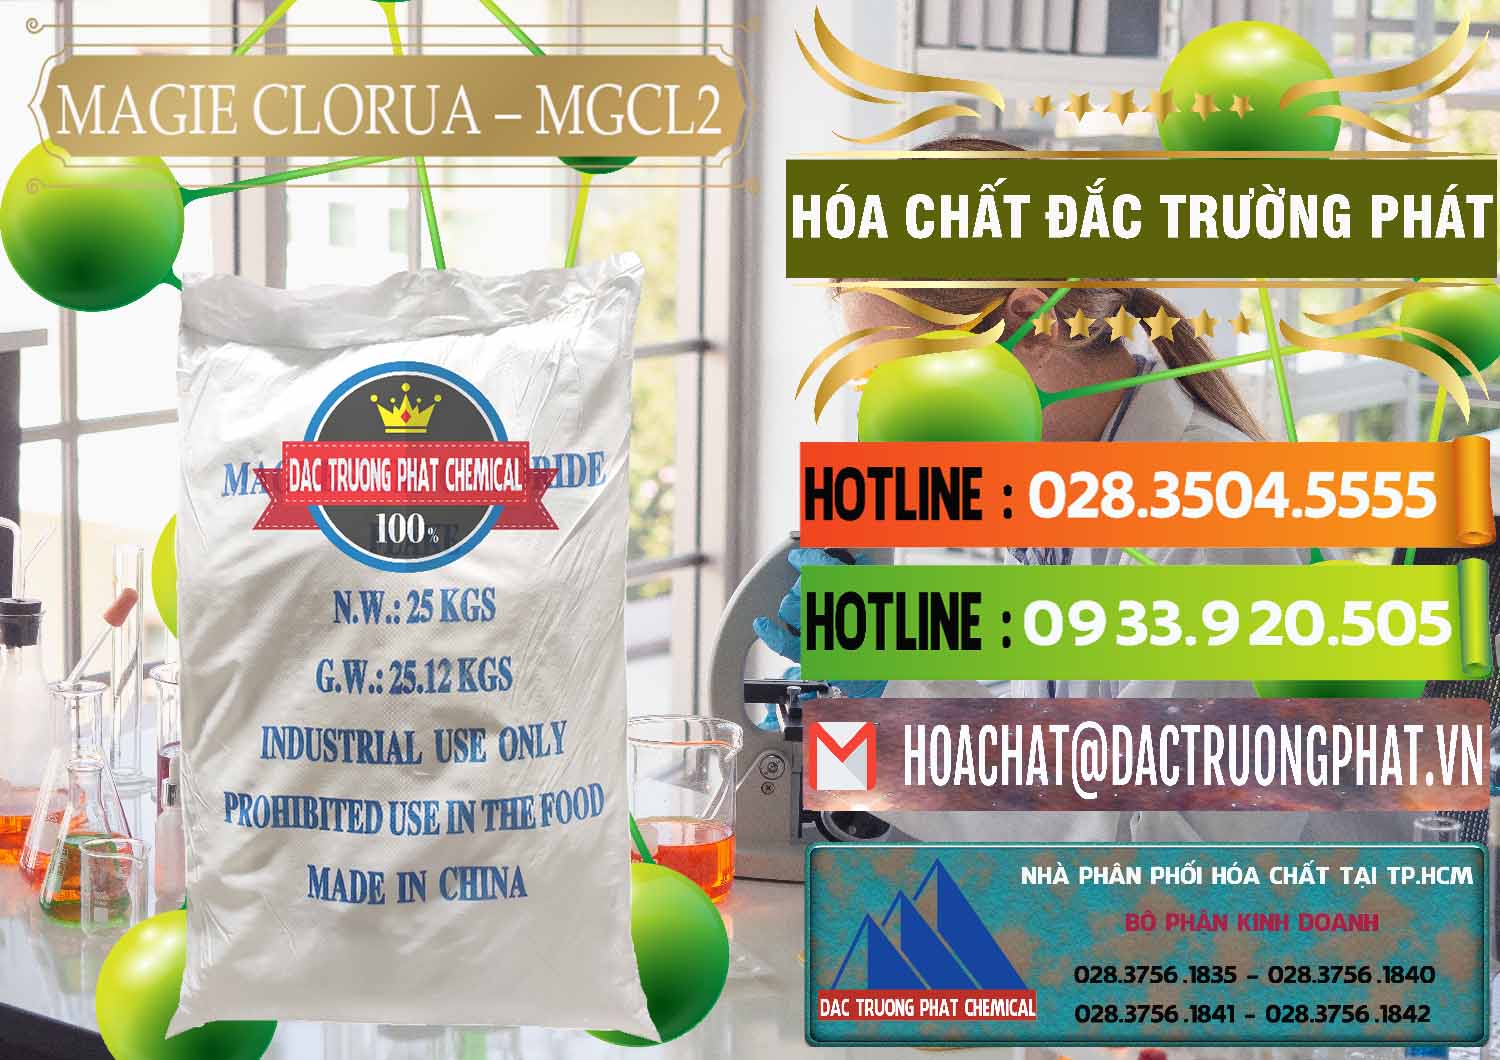 Đơn vị phân phối _ bán Magie Clorua – MGCL2 96% Dạng Vảy Trung Quốc China - 0091 - Nơi chuyên kinh doanh - cung cấp hóa chất tại TP.HCM - cungcaphoachat.com.vn